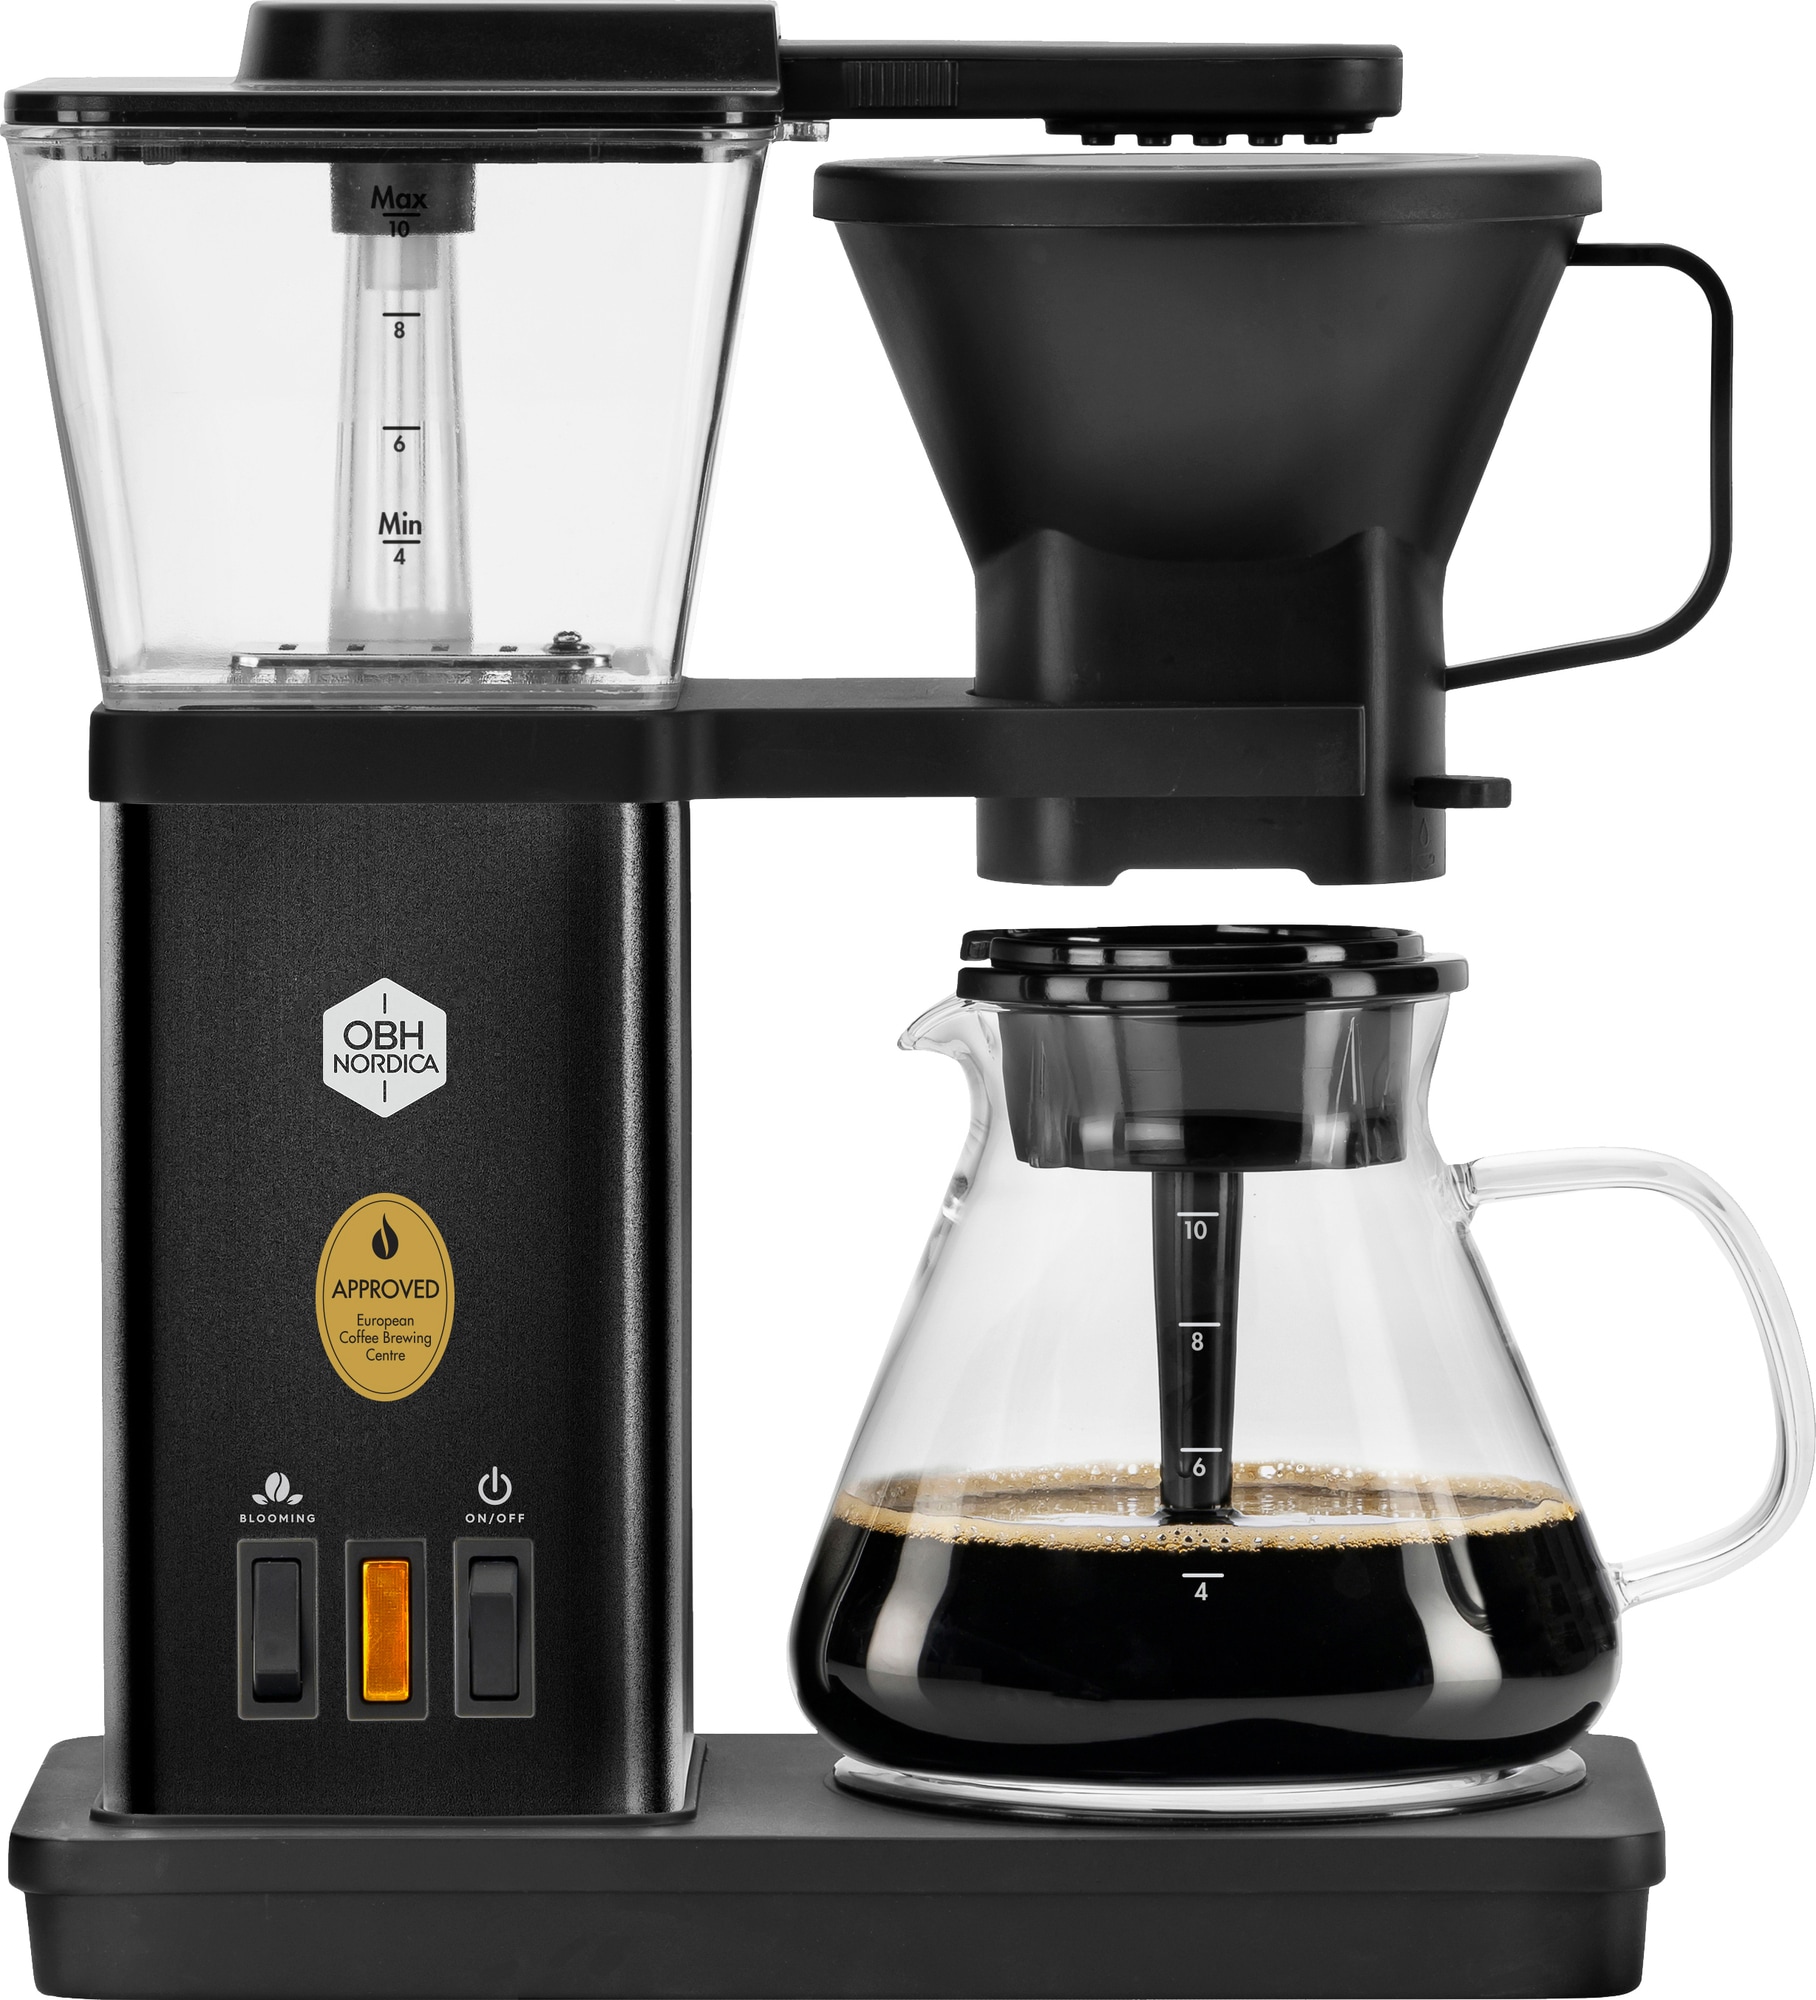 9: OBH Nordica Blooming kaffemaskine 3000000992 (sort)